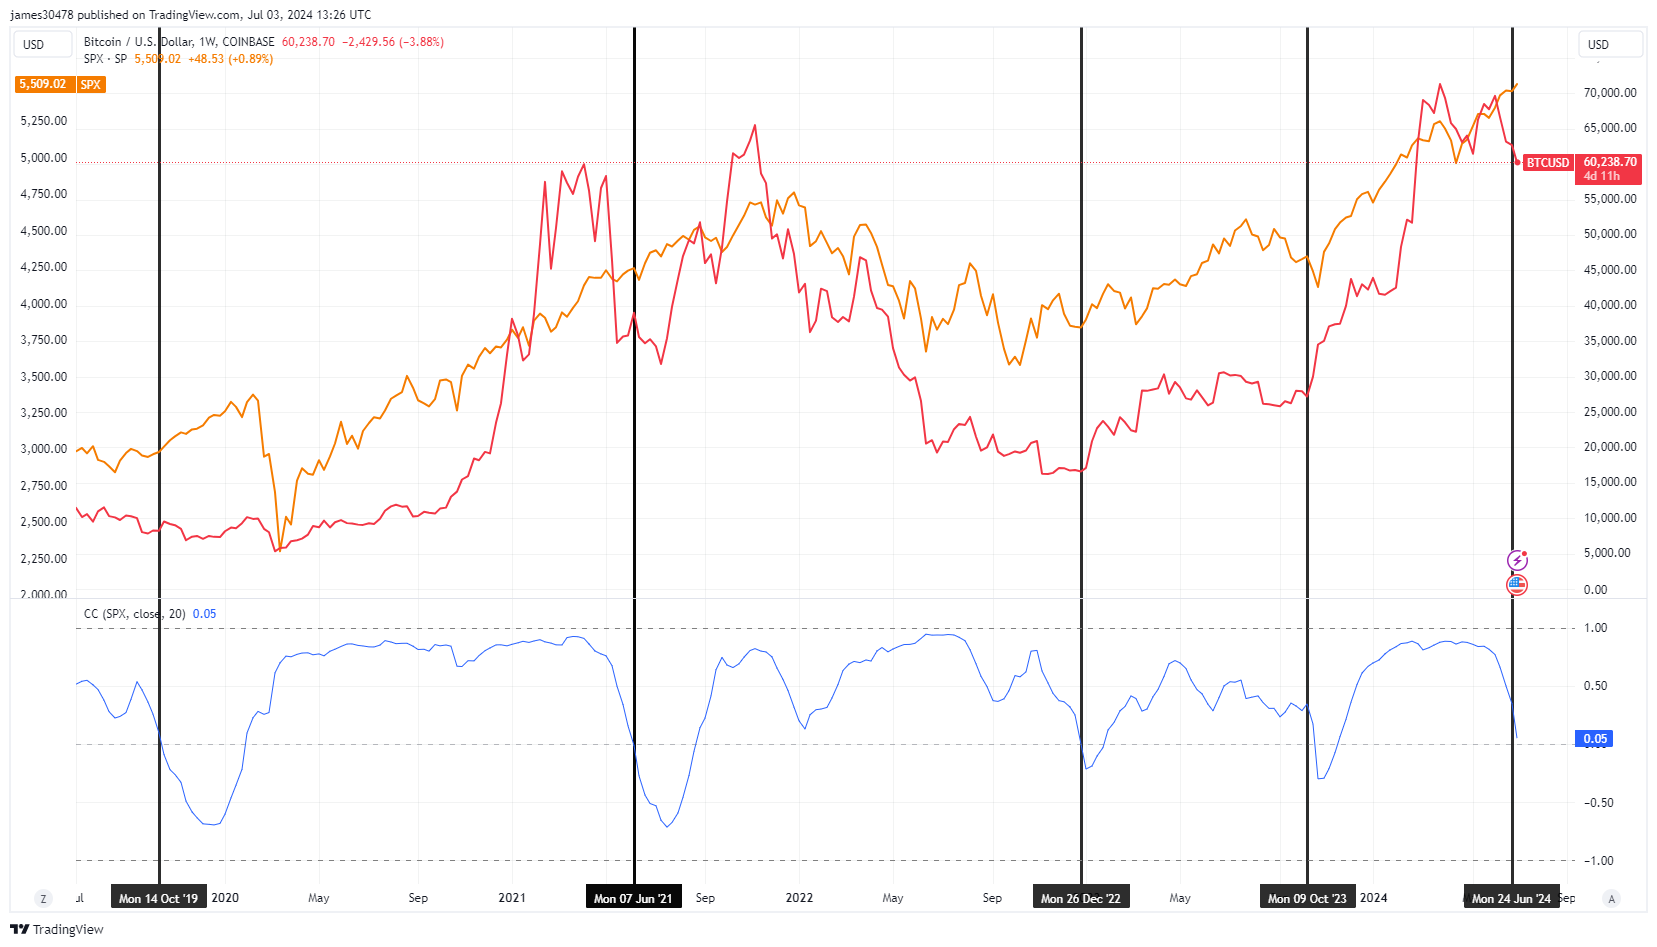 BTCUSD vs SPX Correlation: (Source: TradingView)